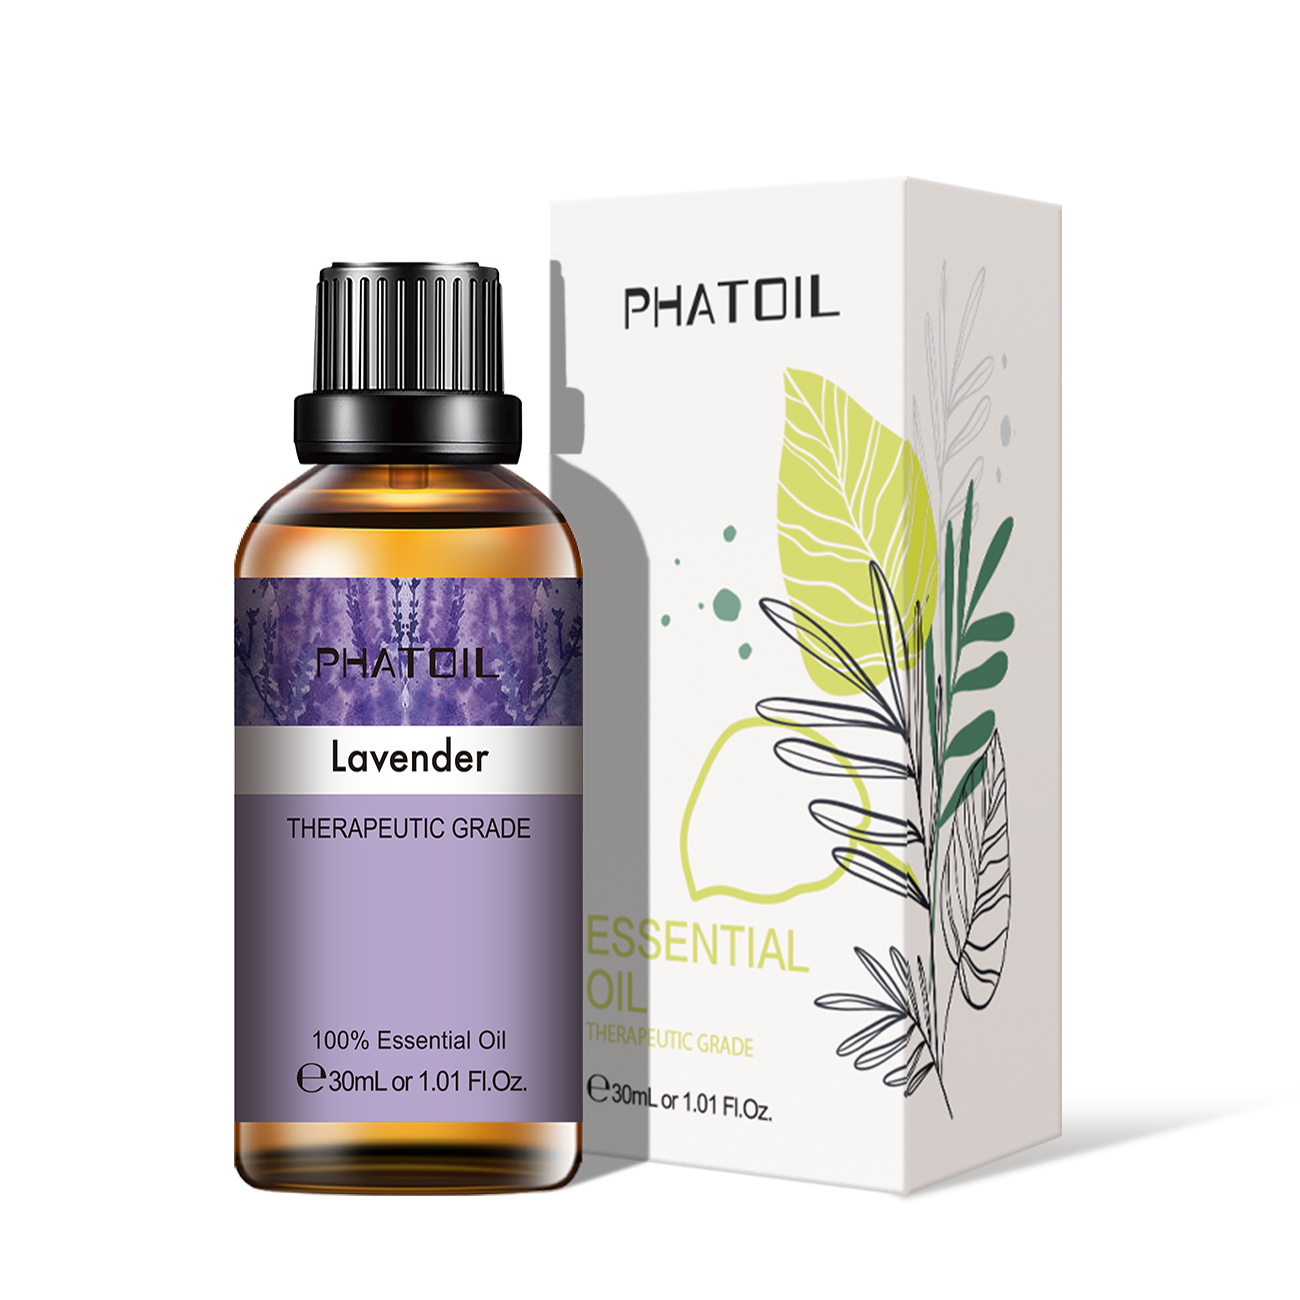 PHATOIL 30ml Pure Essential Oils For Easing Headaches